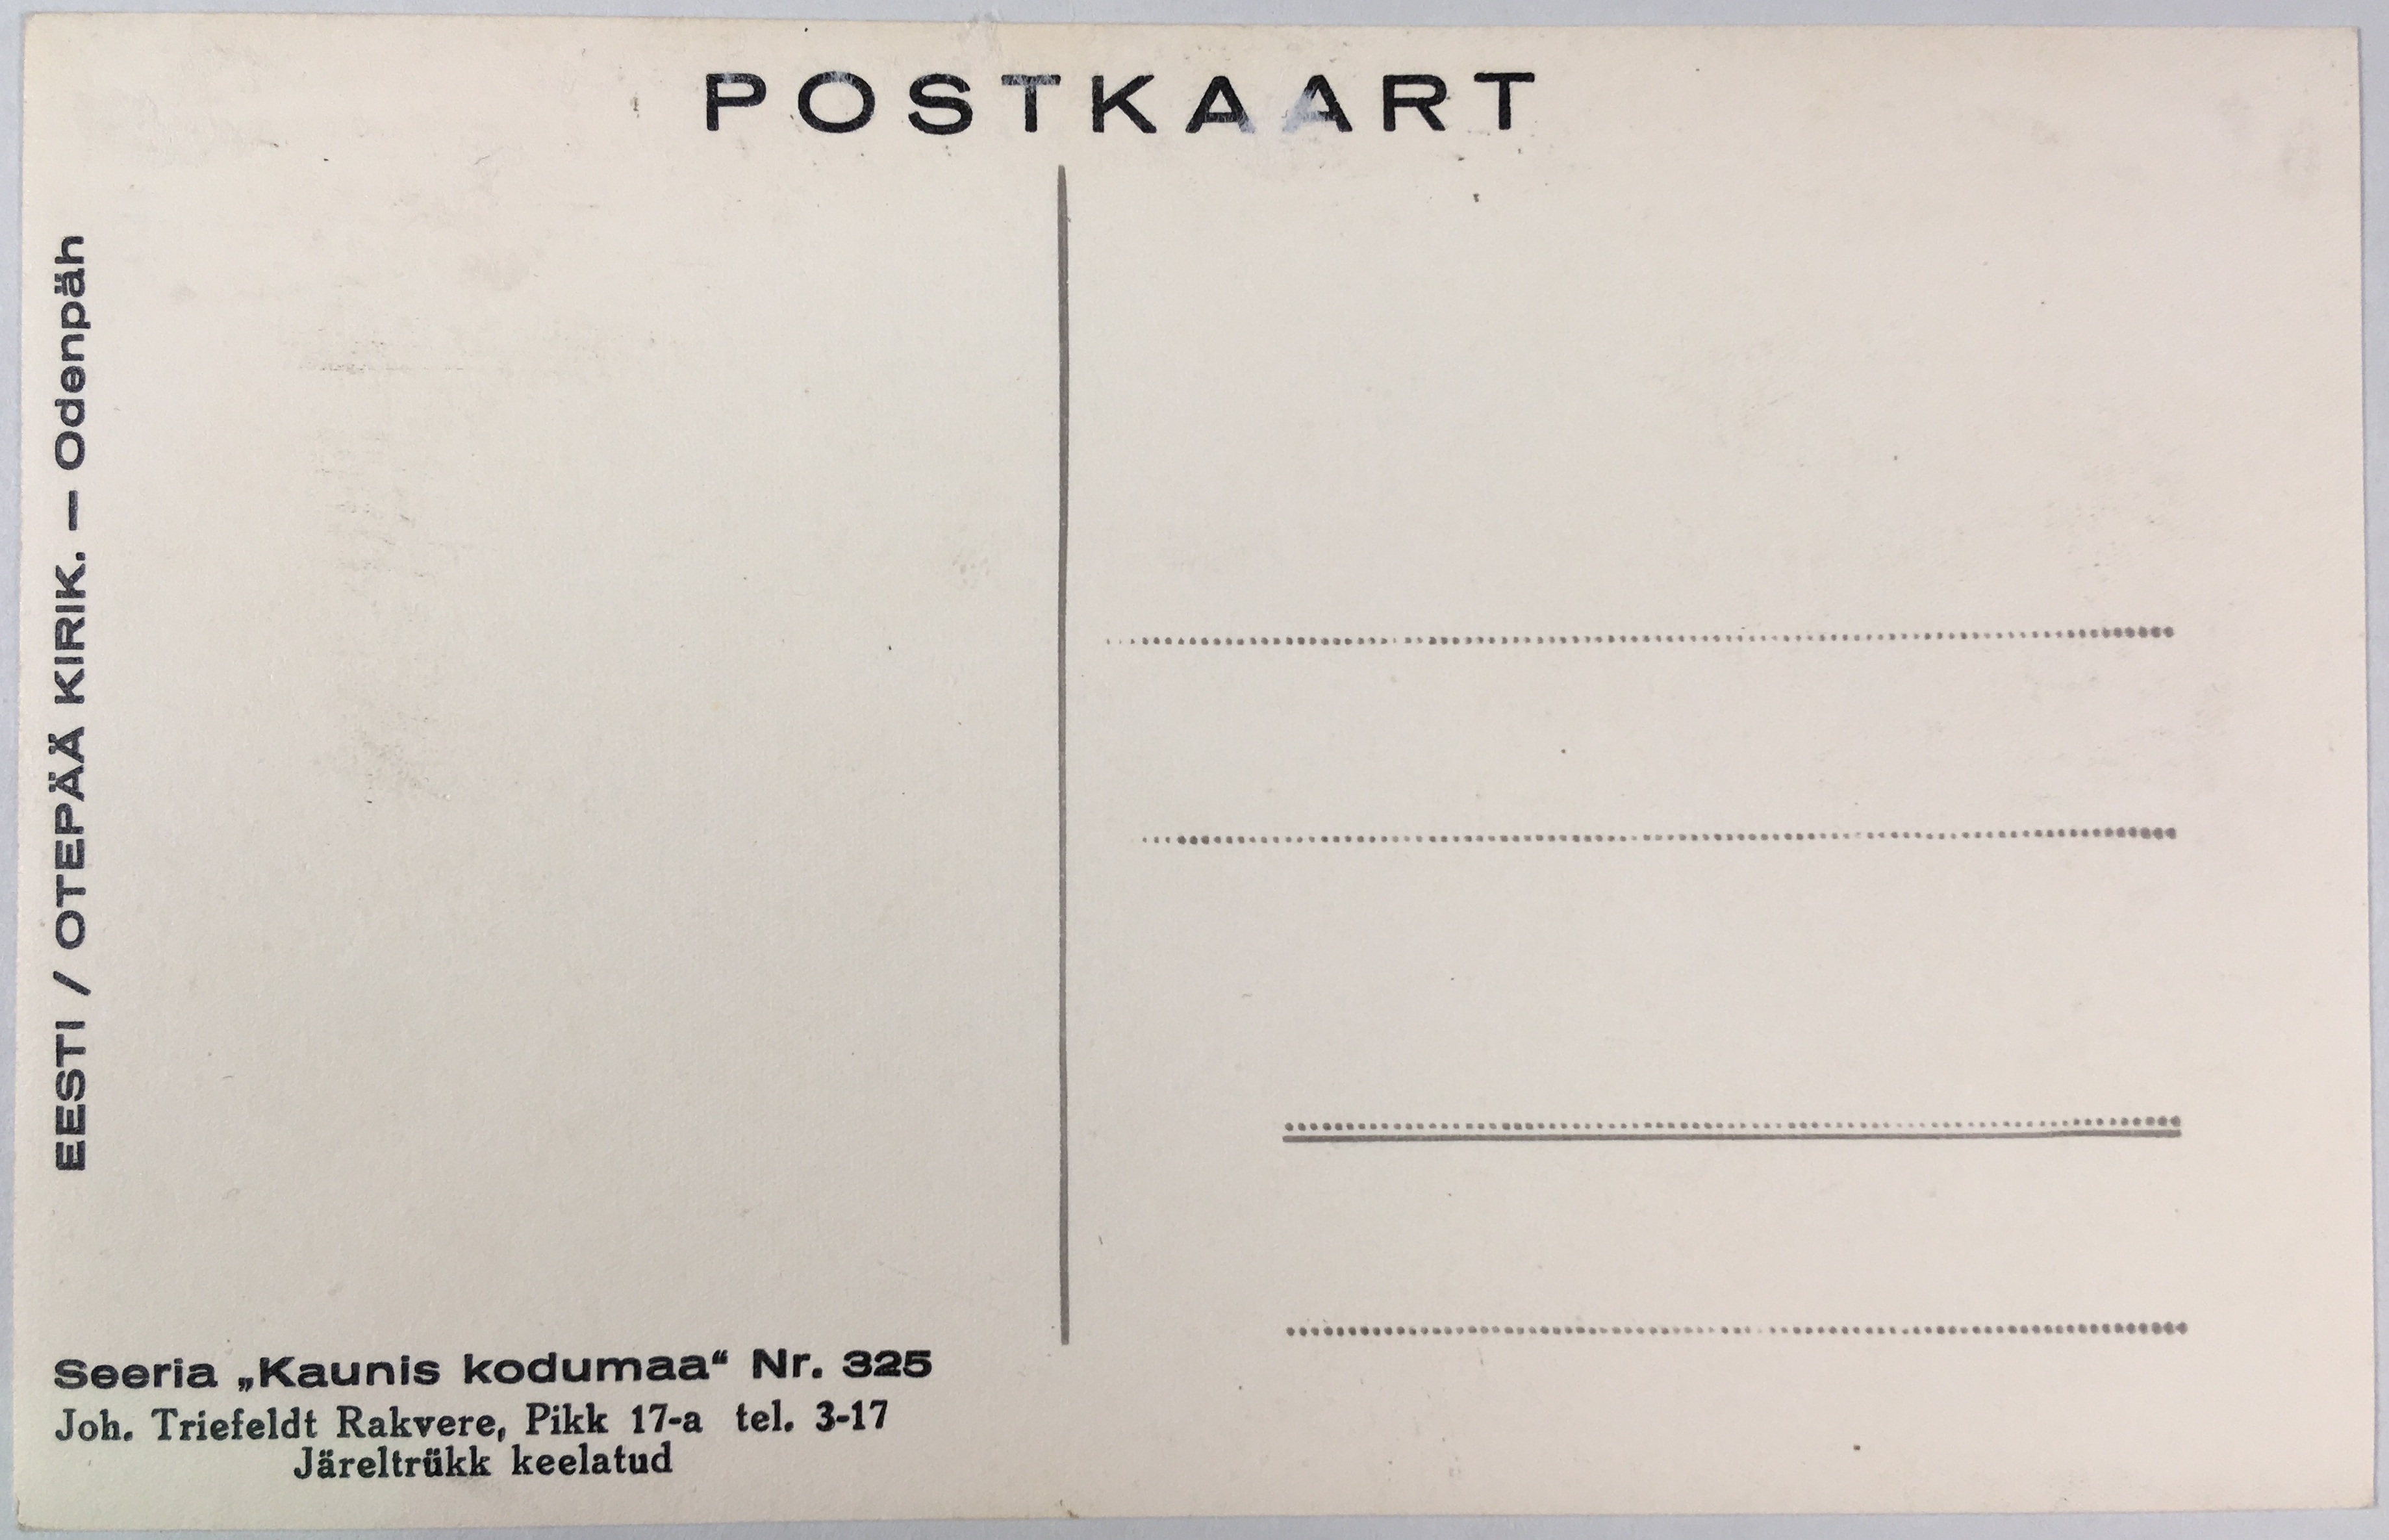 Fotopostkaart sarjast "Kaunis kodumaa" Nr. 325 (tagakülg) - Fotopostkaart Rene Viljati erakogust